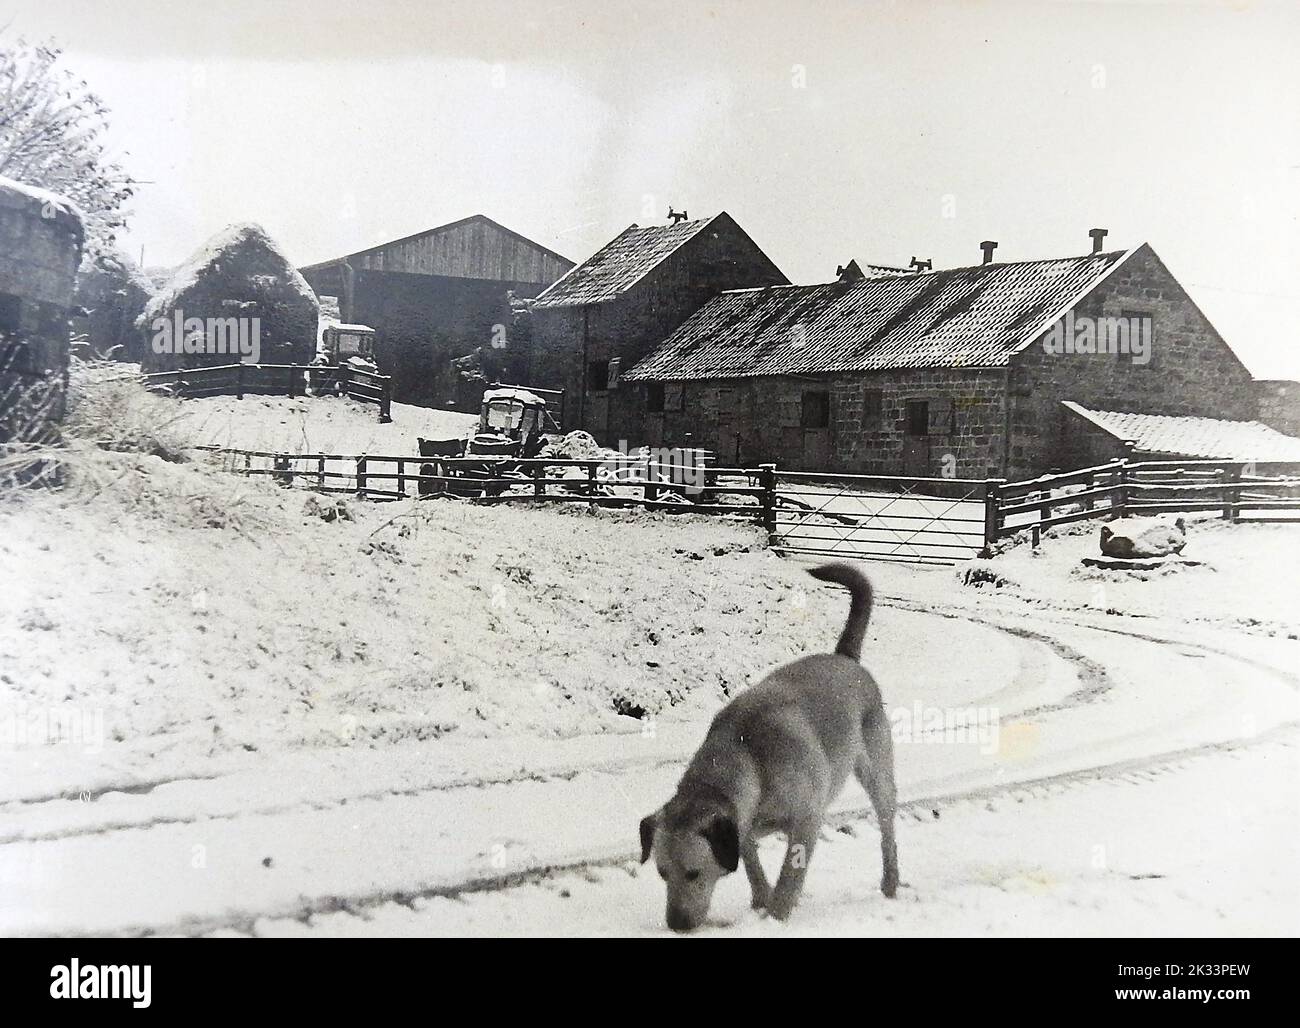 Una foto antigua (1980) de Low Farm, Dunsley, Newholm cum Dunsley, North Yorkshire. Un perro Labrador de Oro serpentea por la nieve en la aldea histórica un día de invierno. Foto de stock